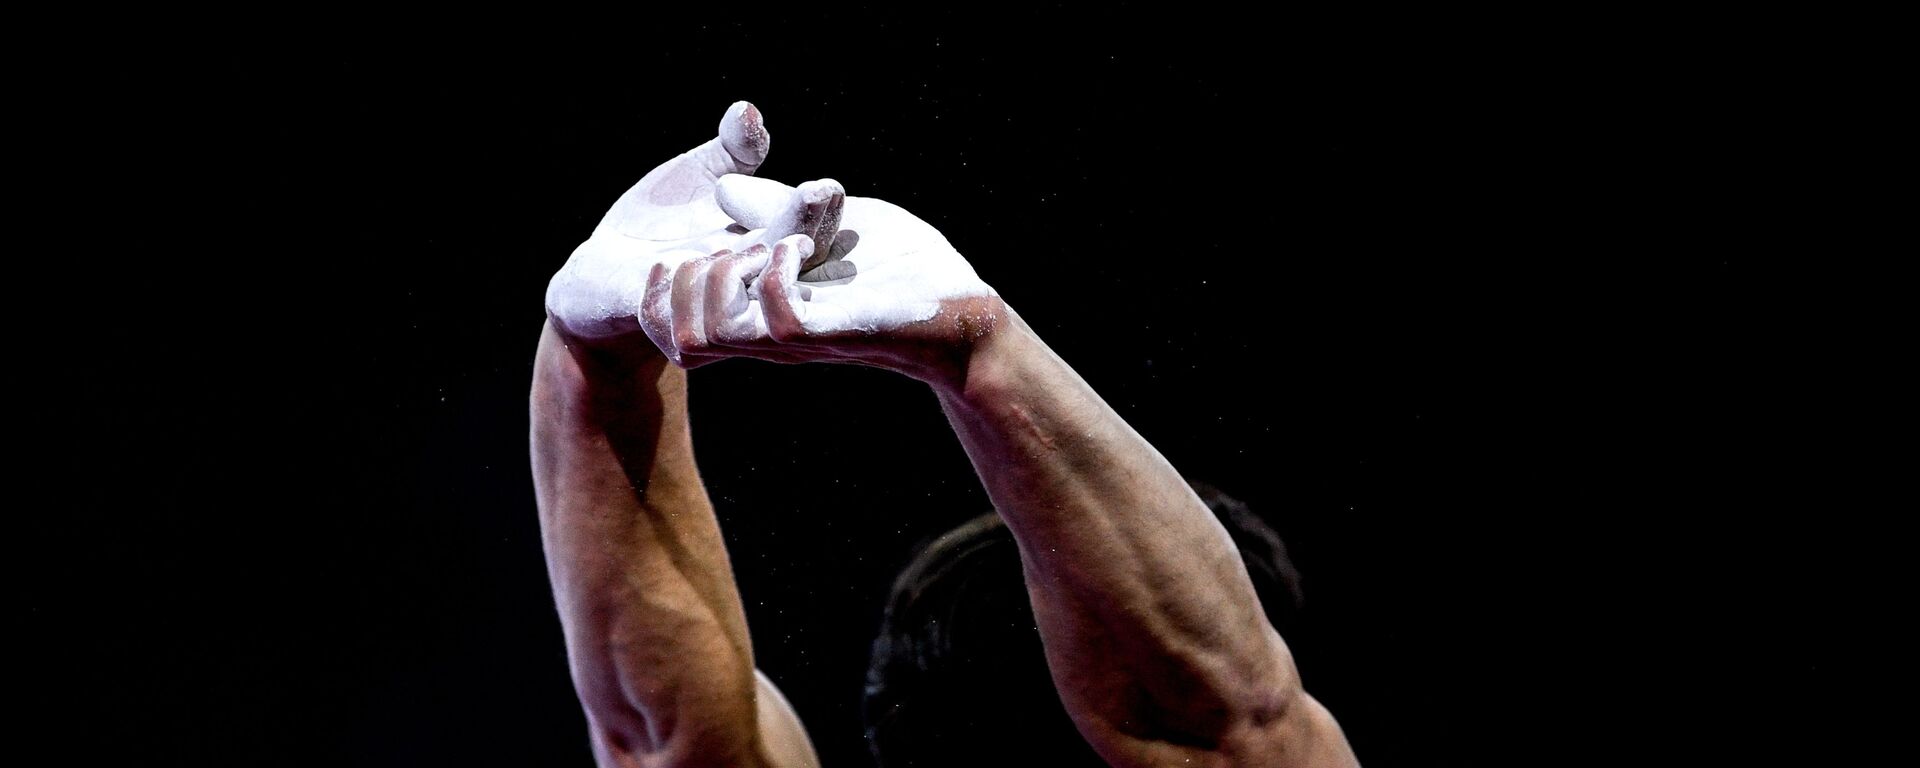 Артур Далалоян в финале вольных упражнений среди мужчин на чемпионате мира по спортивной гимнастике в Штутгарте. - Sputnik Армения, 1920, 07.03.2020